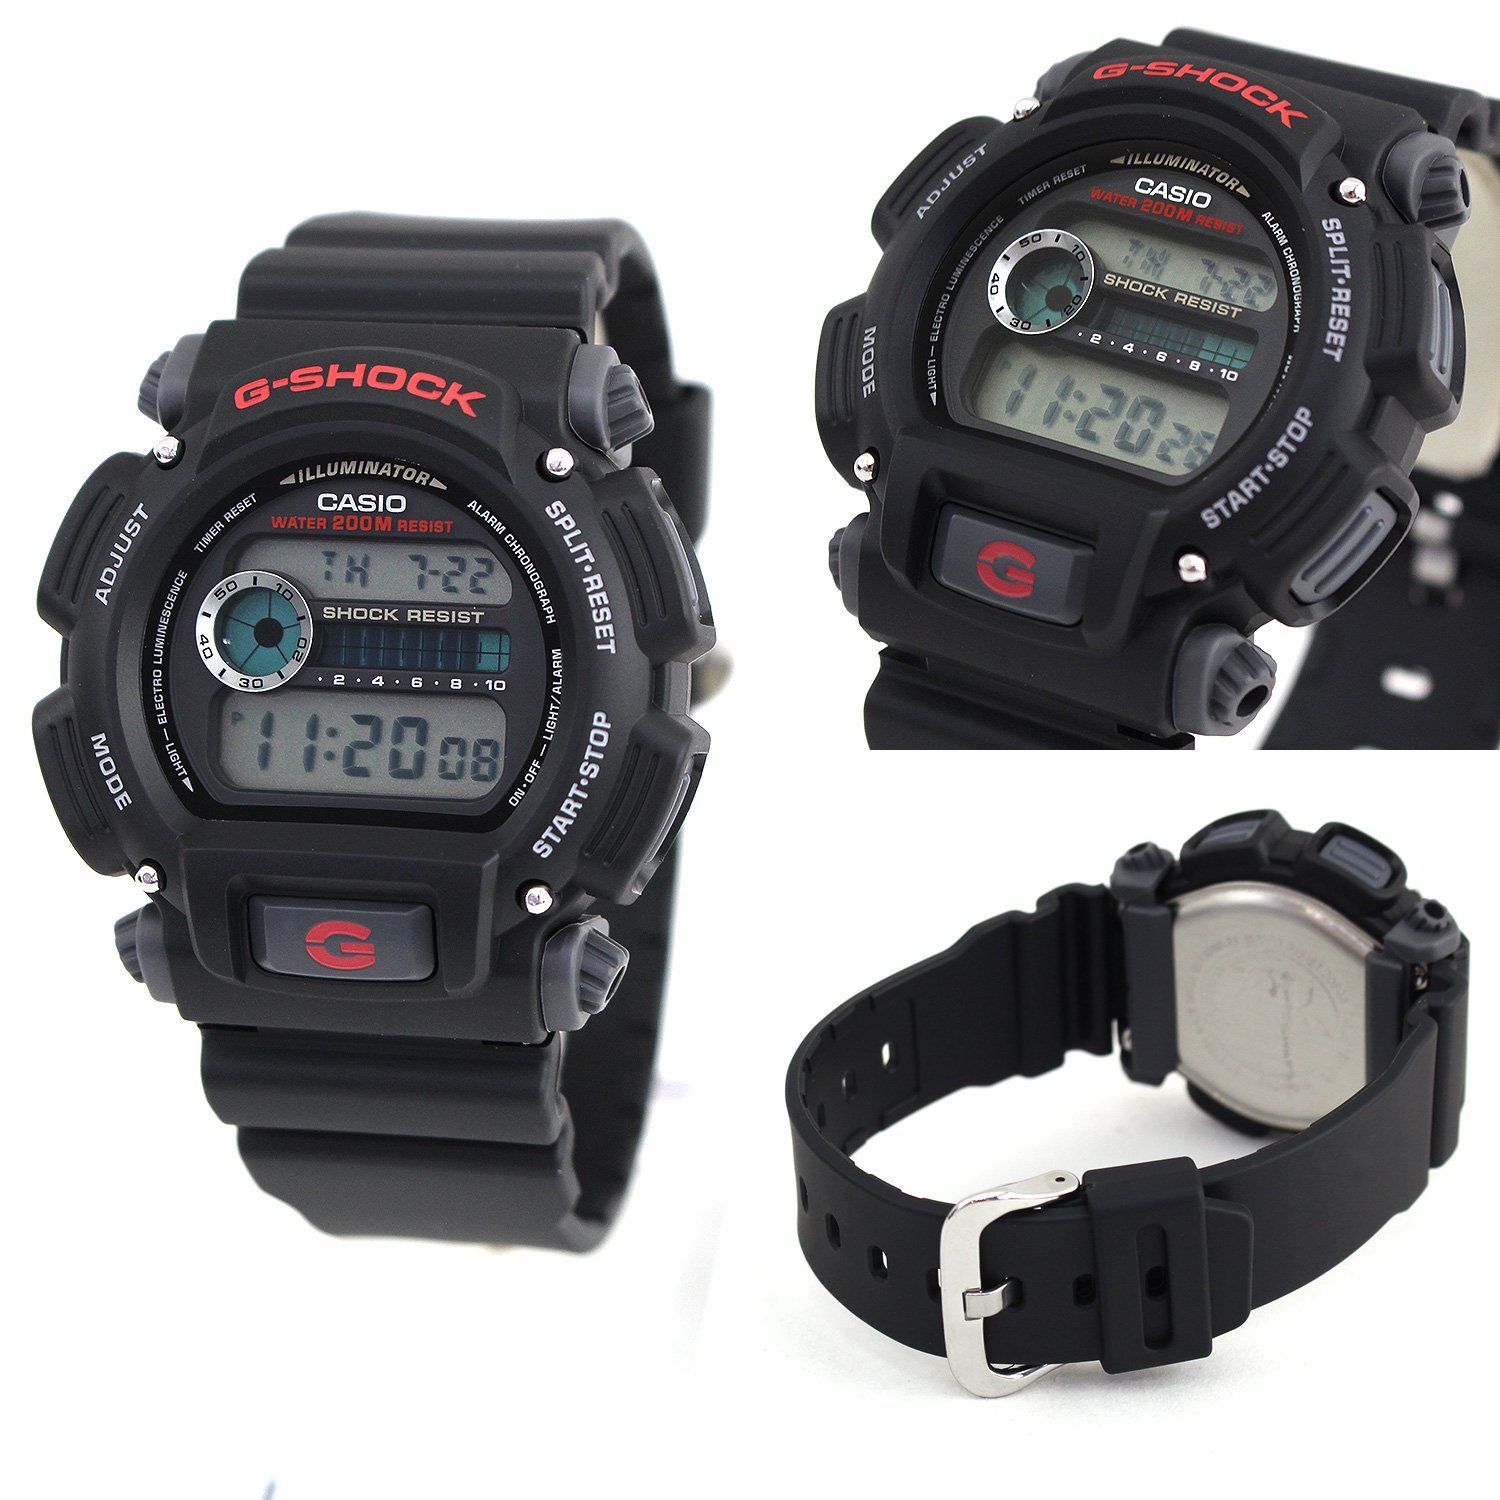 CASIO 腕時計 GショックDW-9052-1V オリジナルベルトセット G-SHOCK 海外モデル デジタル DW-9052-1V-BELTSET  カシオ g-shock gショック メンズ 腕時計 - メルカリ